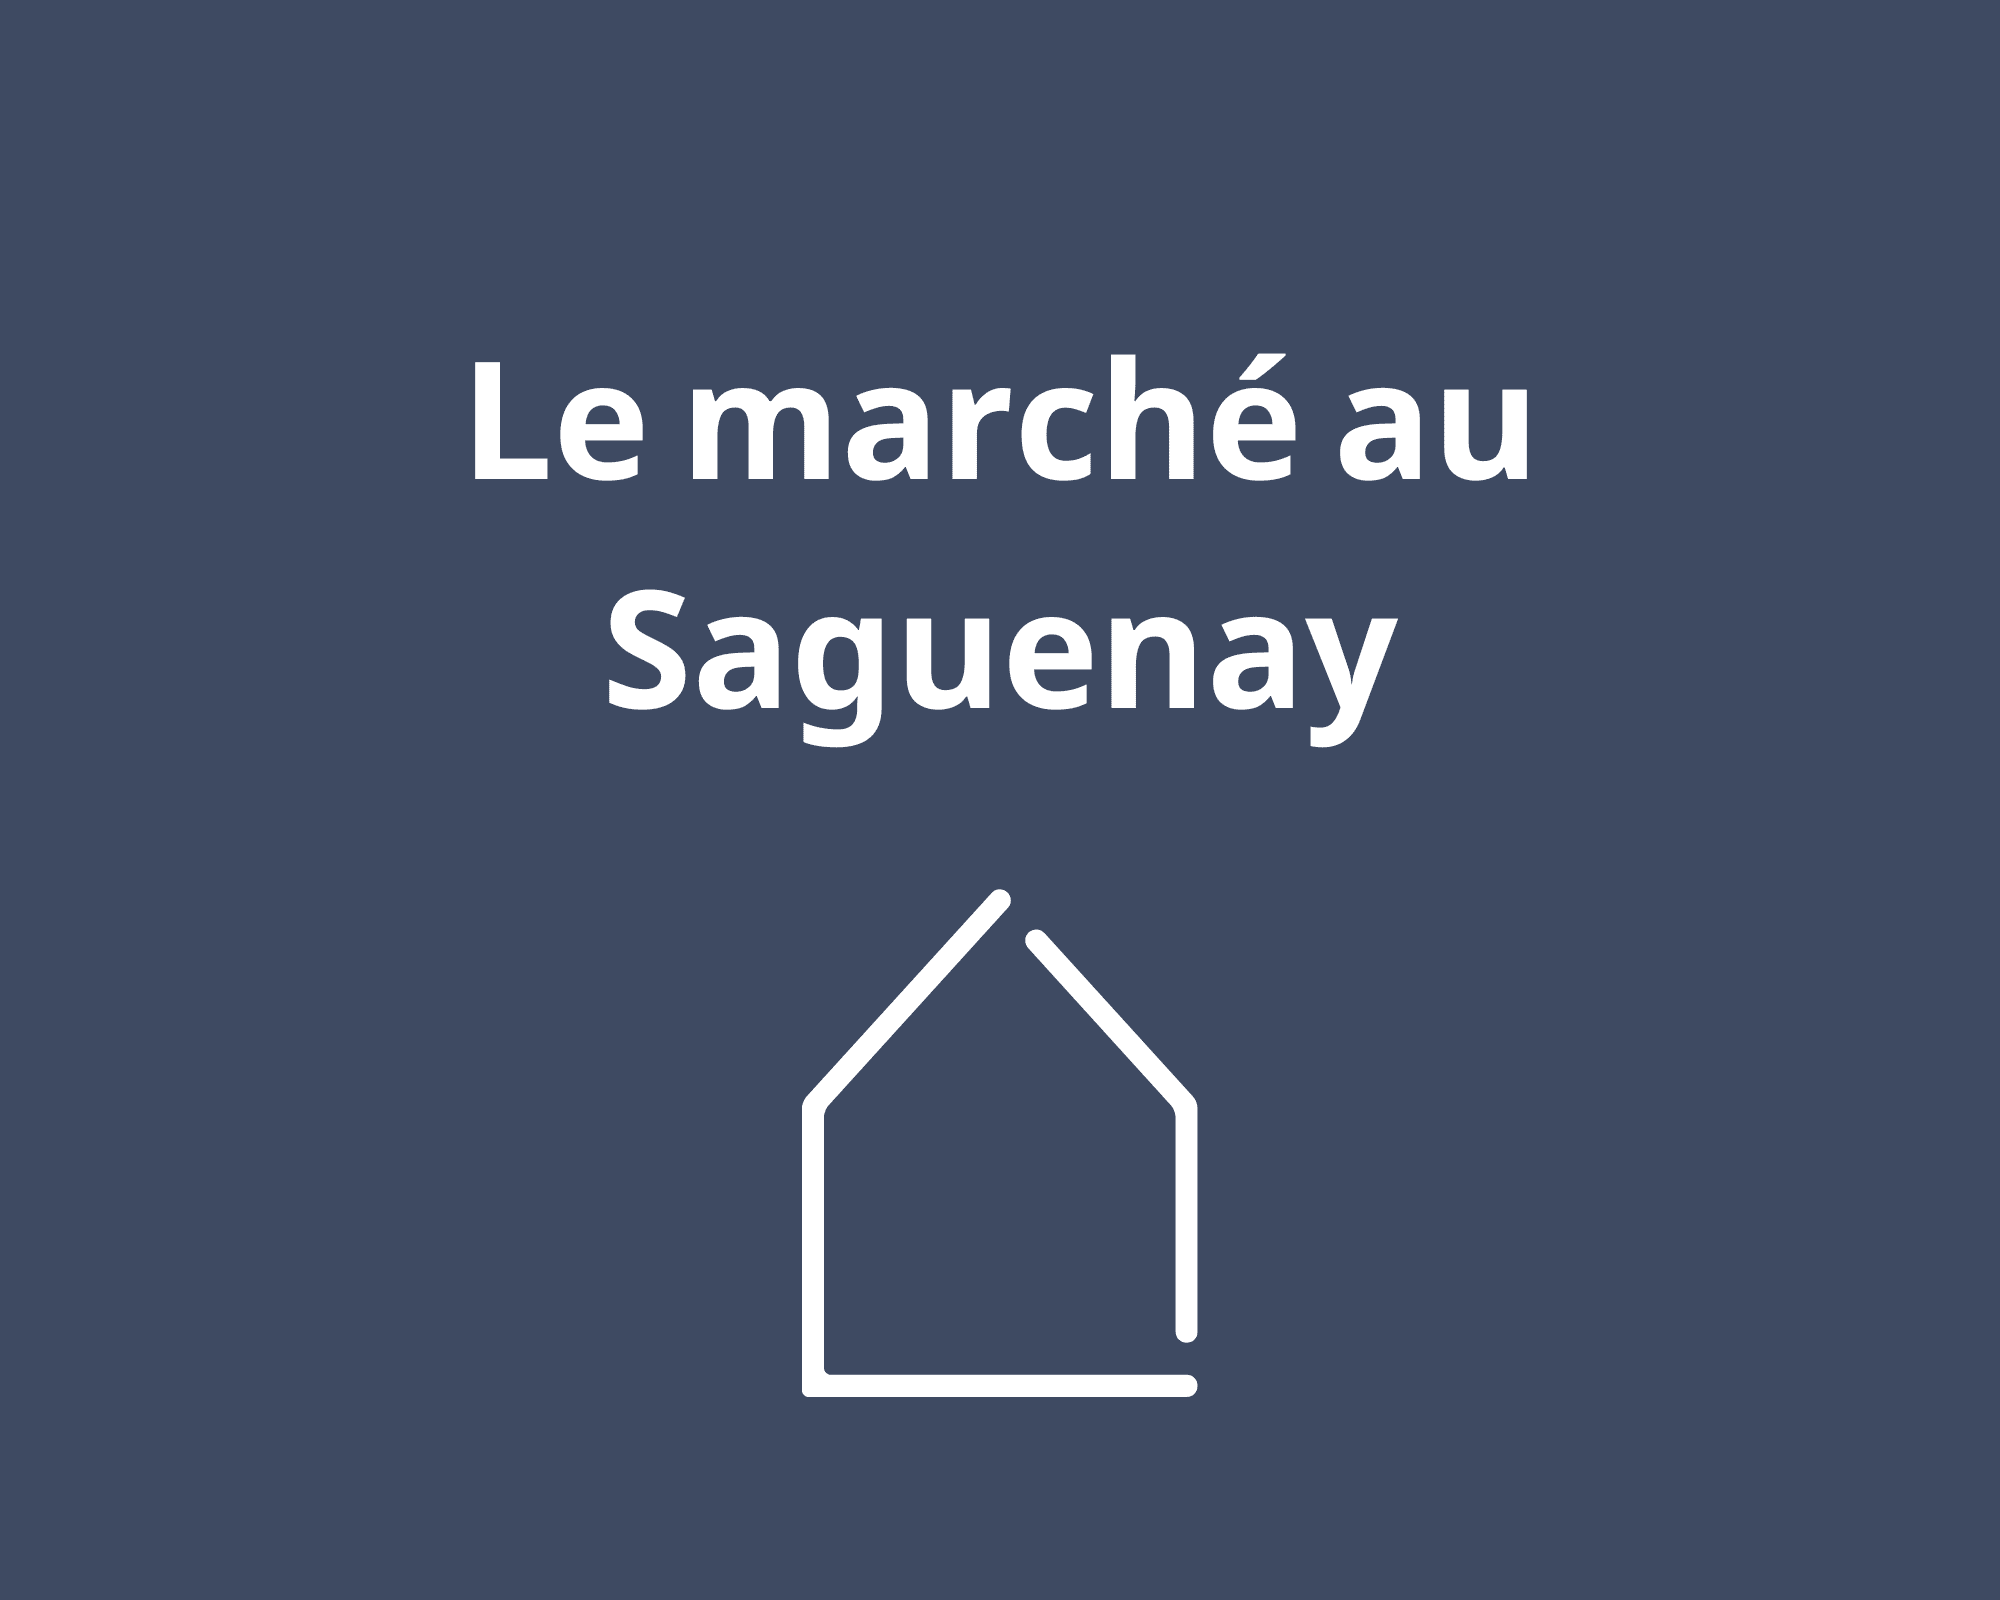 Le marché au Saguenay - Équipe Lavoie²